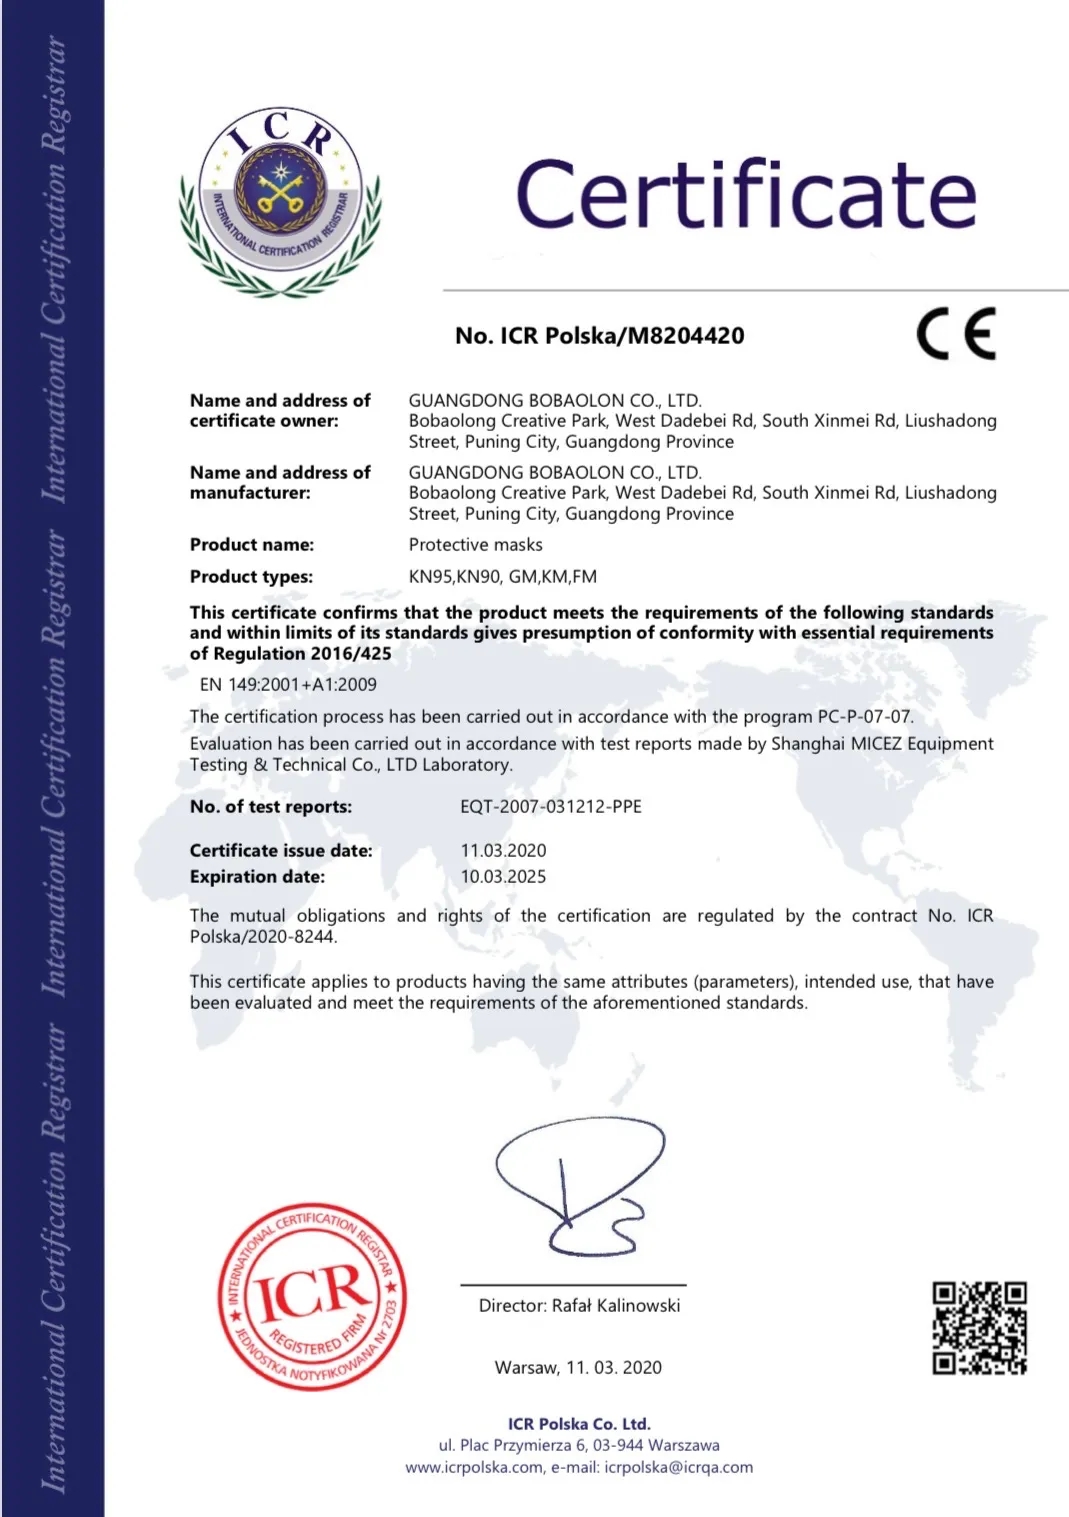 荣誉会长单位丨柏堡龙顺利通过防护用品CE、FDA双认证 并取得对外贸易经营者资质